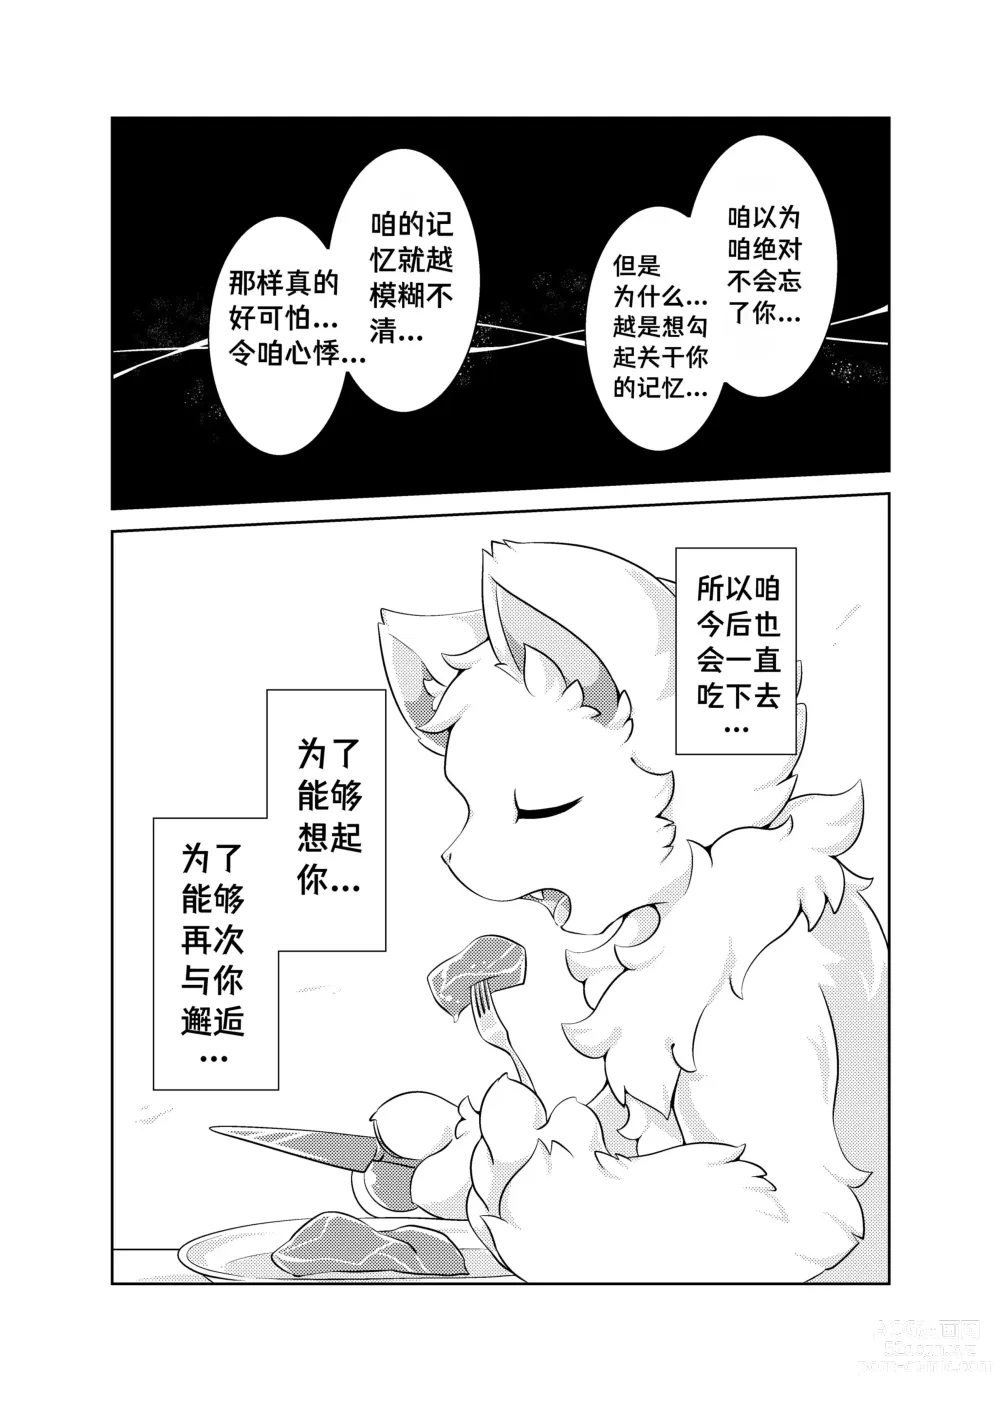 Page 48 of doujinshi Bokuyo motsuni no oishii seikatu.R-18G